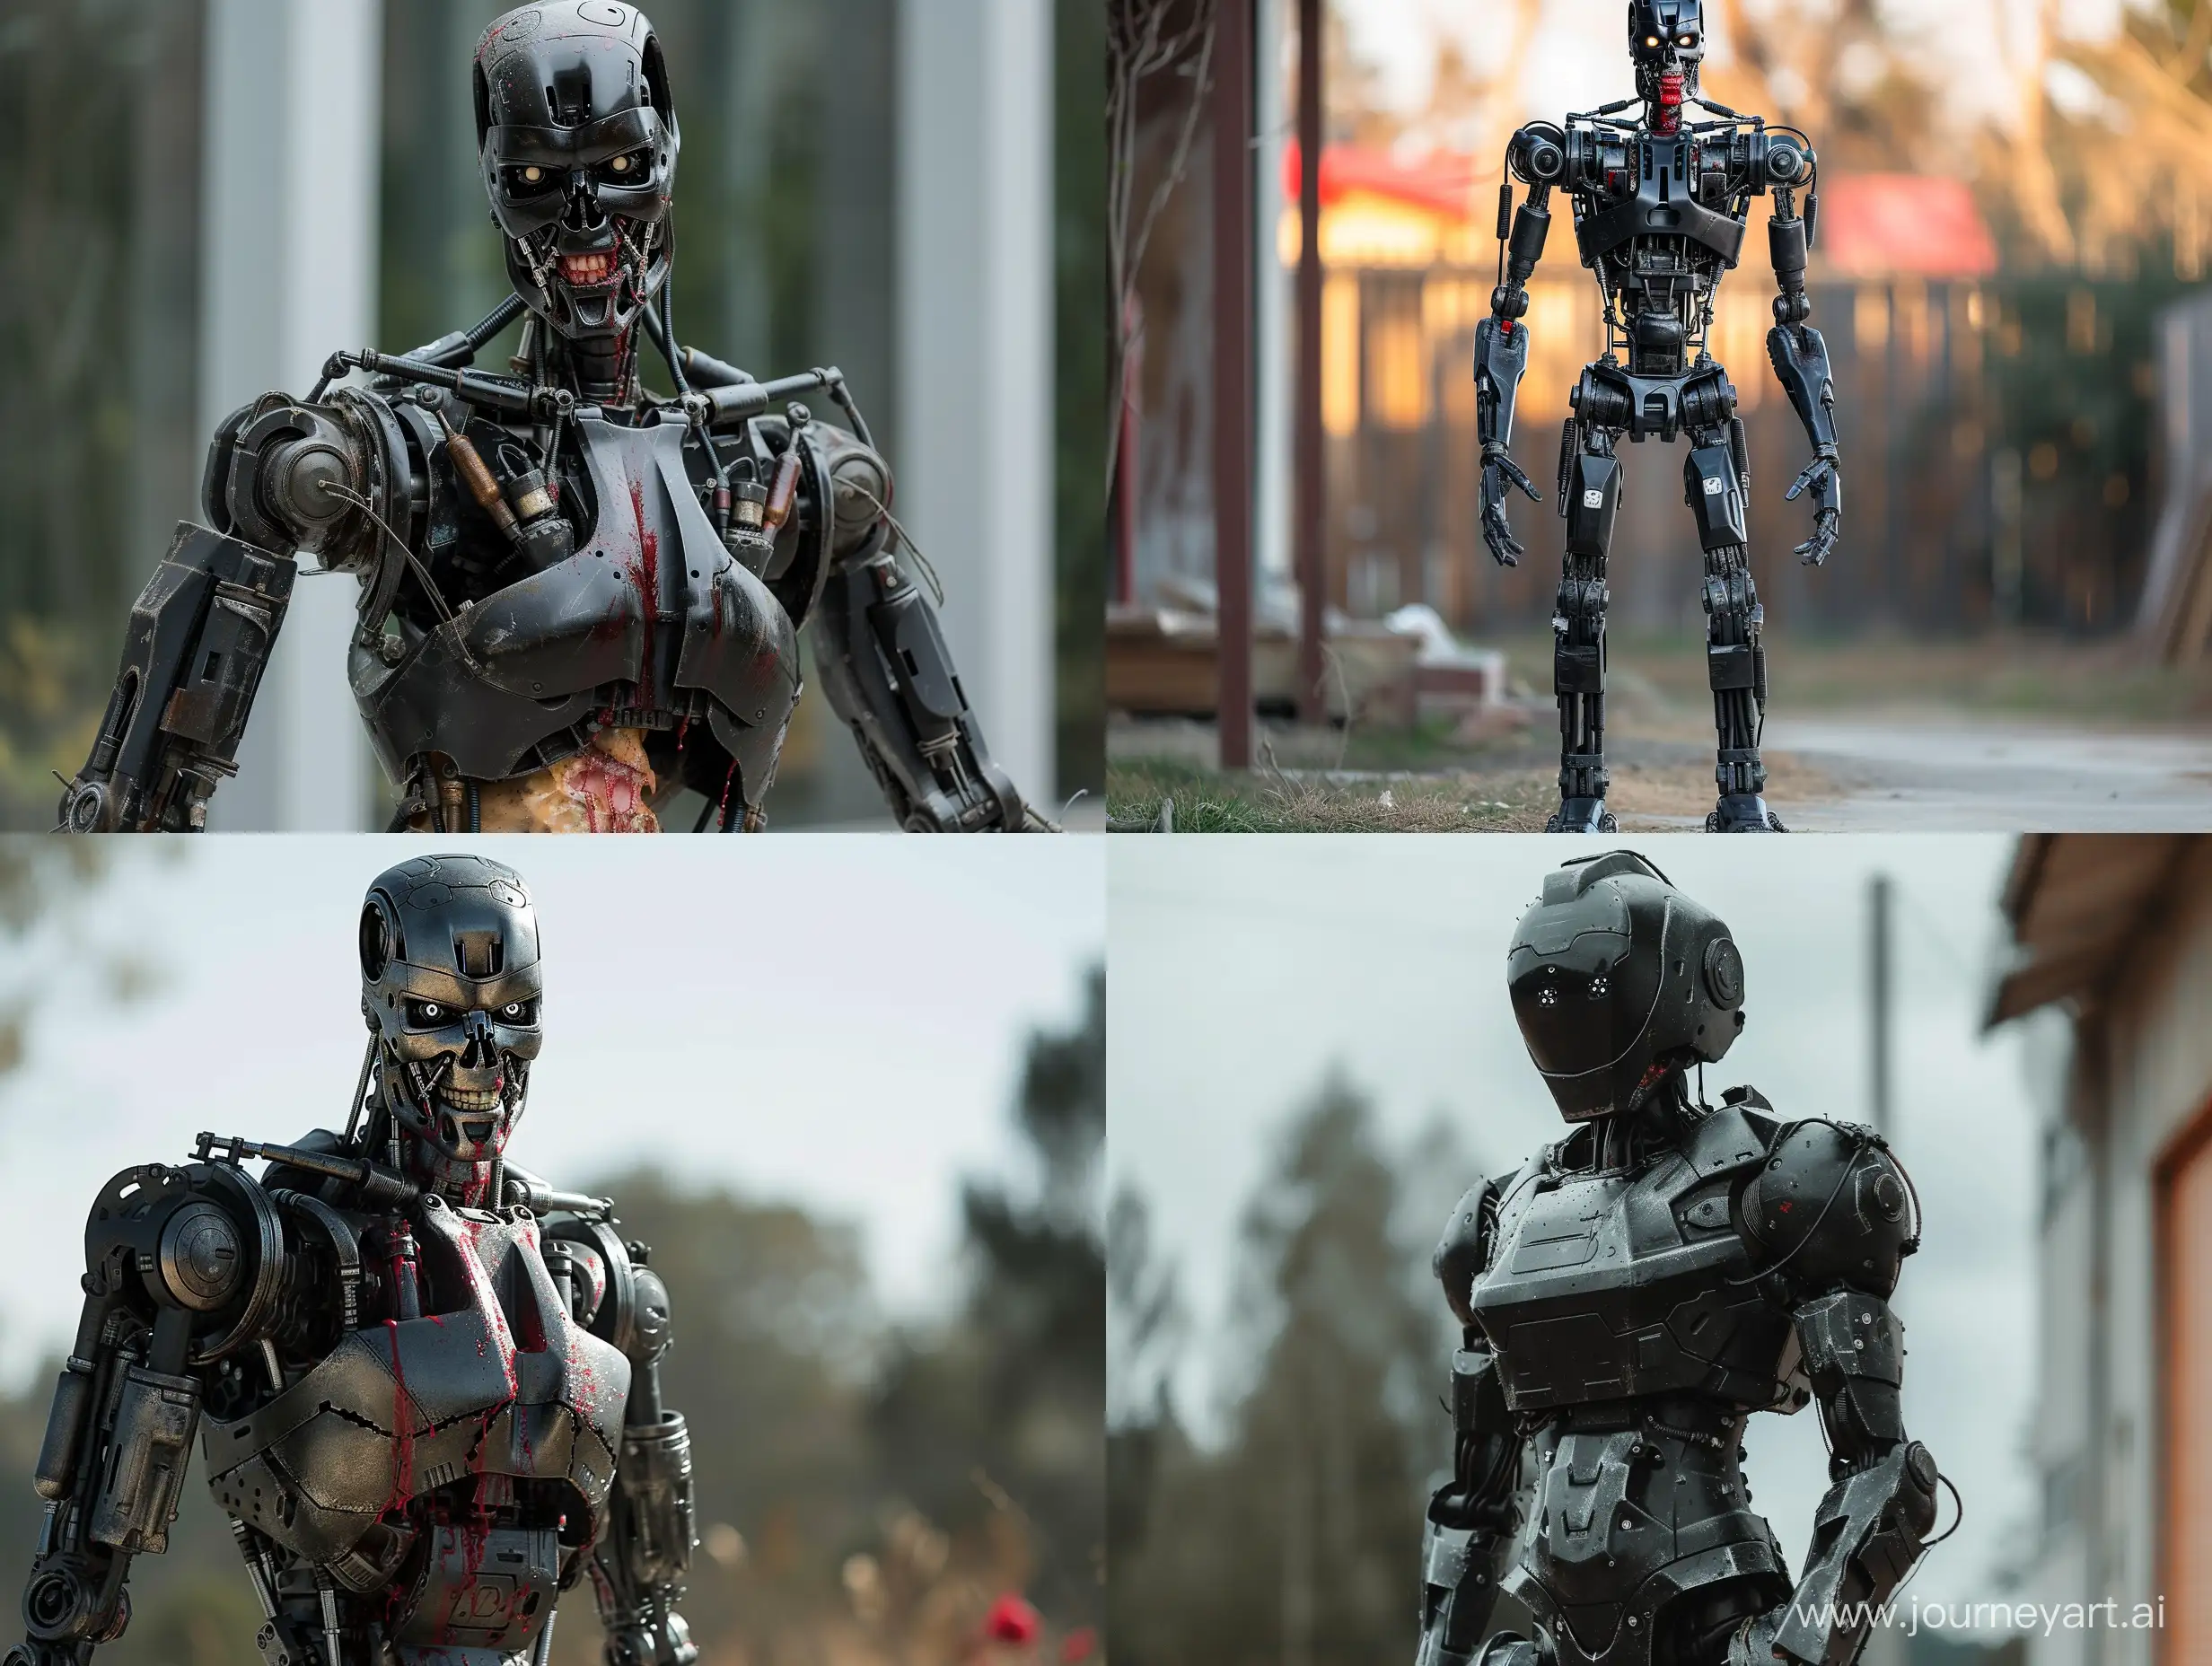 Menacing-Killer-Robot-Stands-Alone-in-Gruesome-Horror-Scene